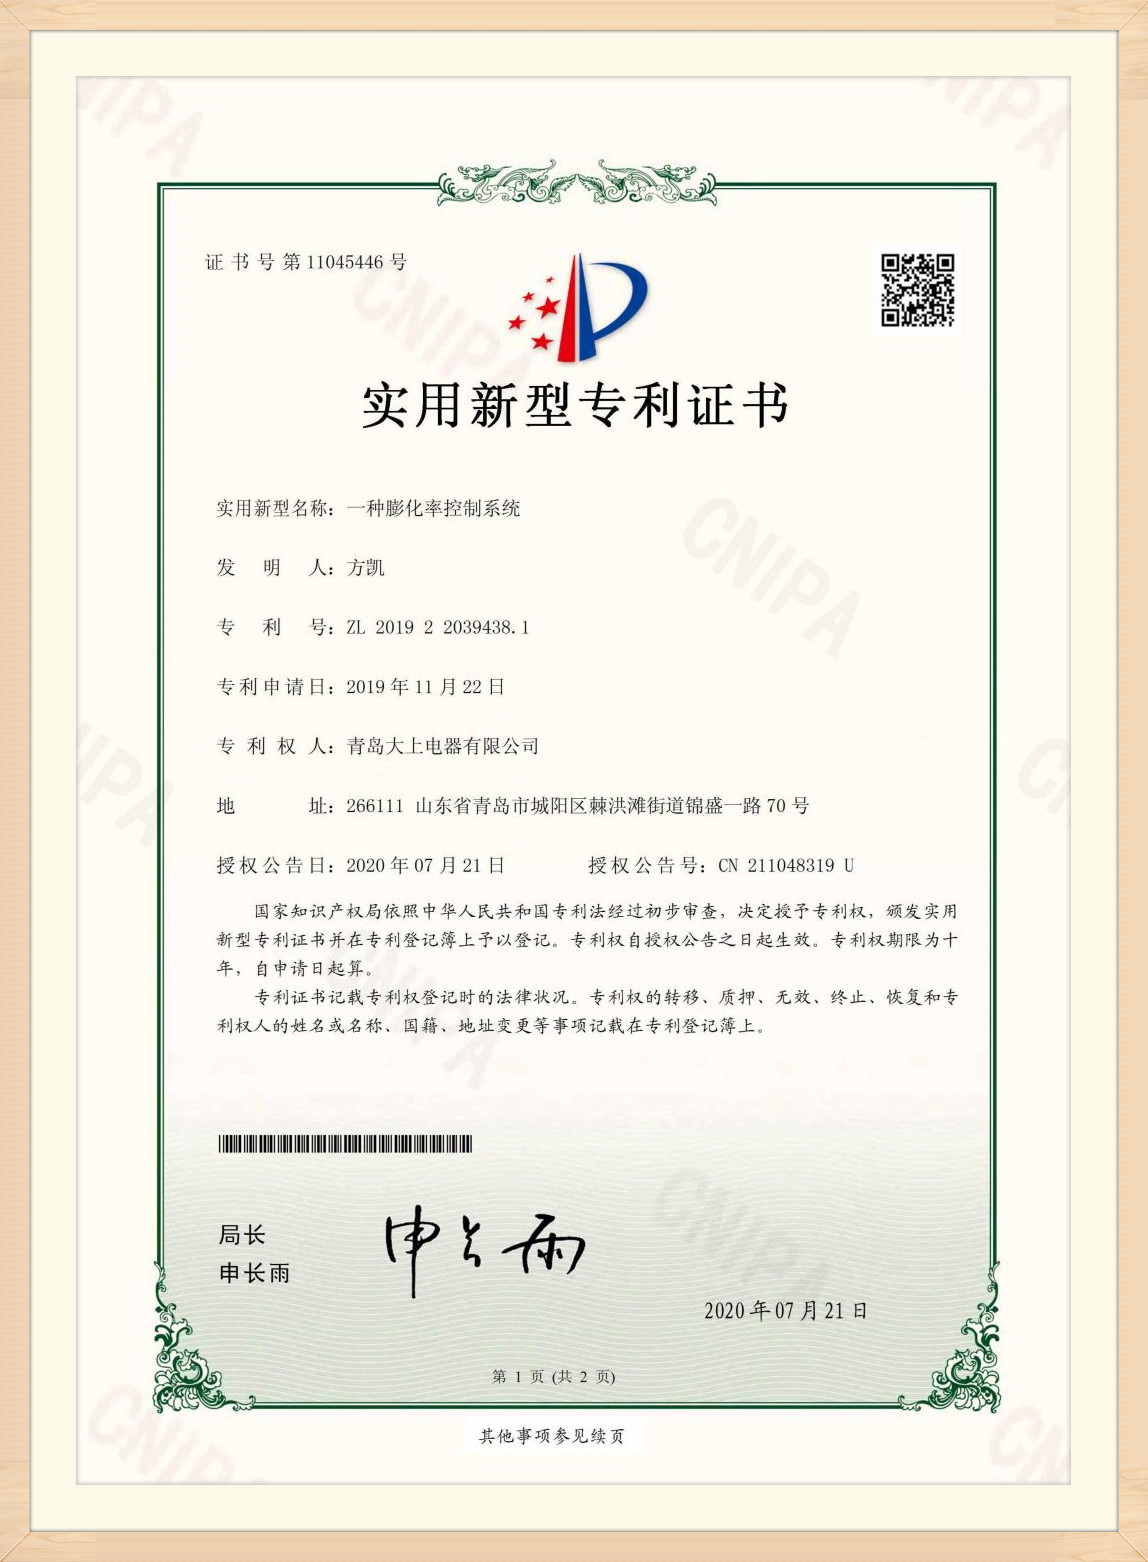 Patentový certifikát (14)